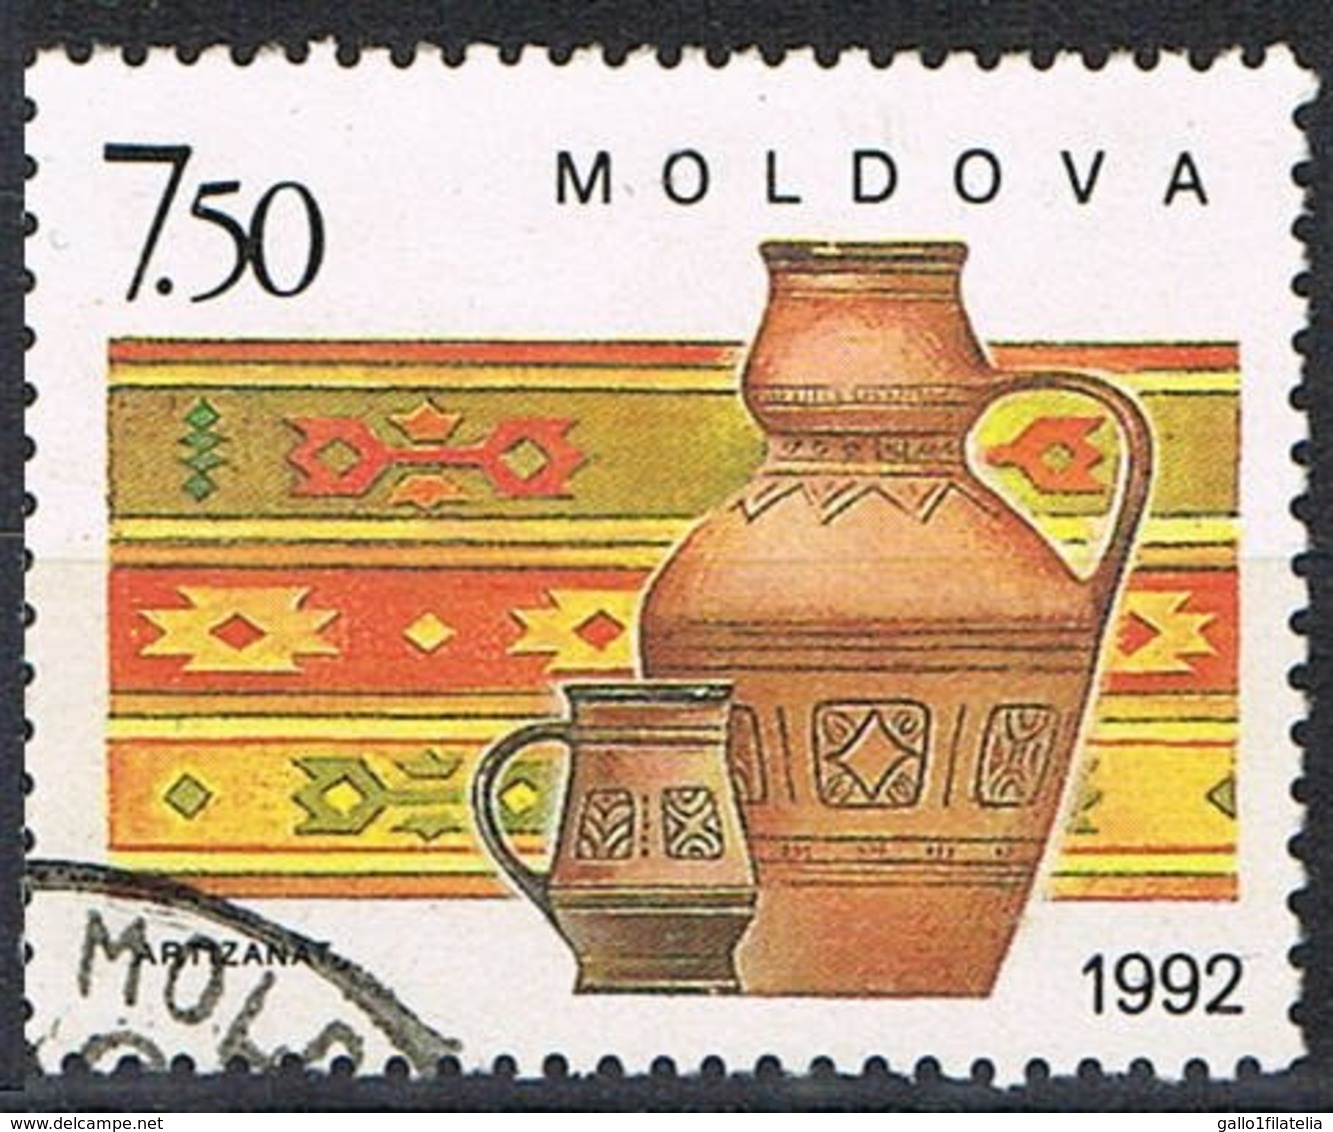 1992 - MOLDAVIA / MOLDOVA - ARTIGIANATO / HANDICRAFT - USATO / USED - Moldavia